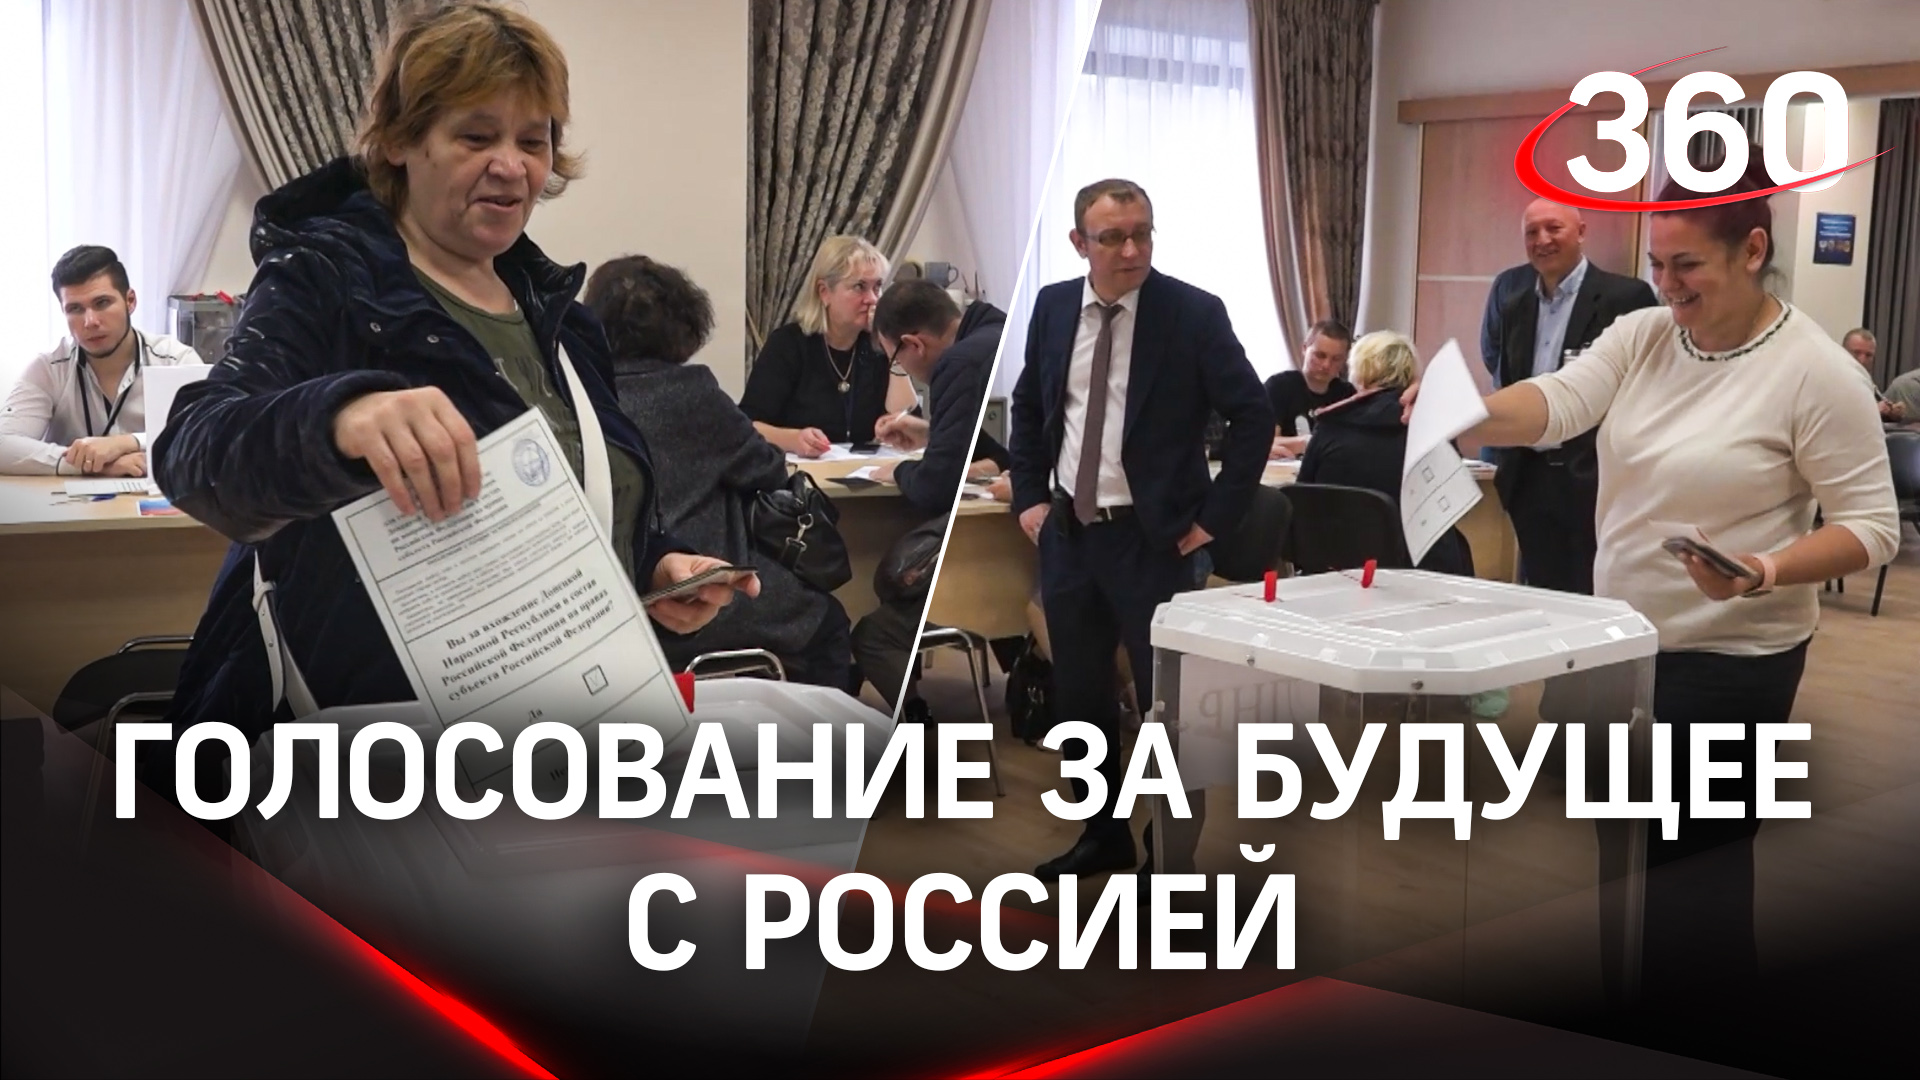 Иностранцы следят за голосованием на референдуме в московских участках